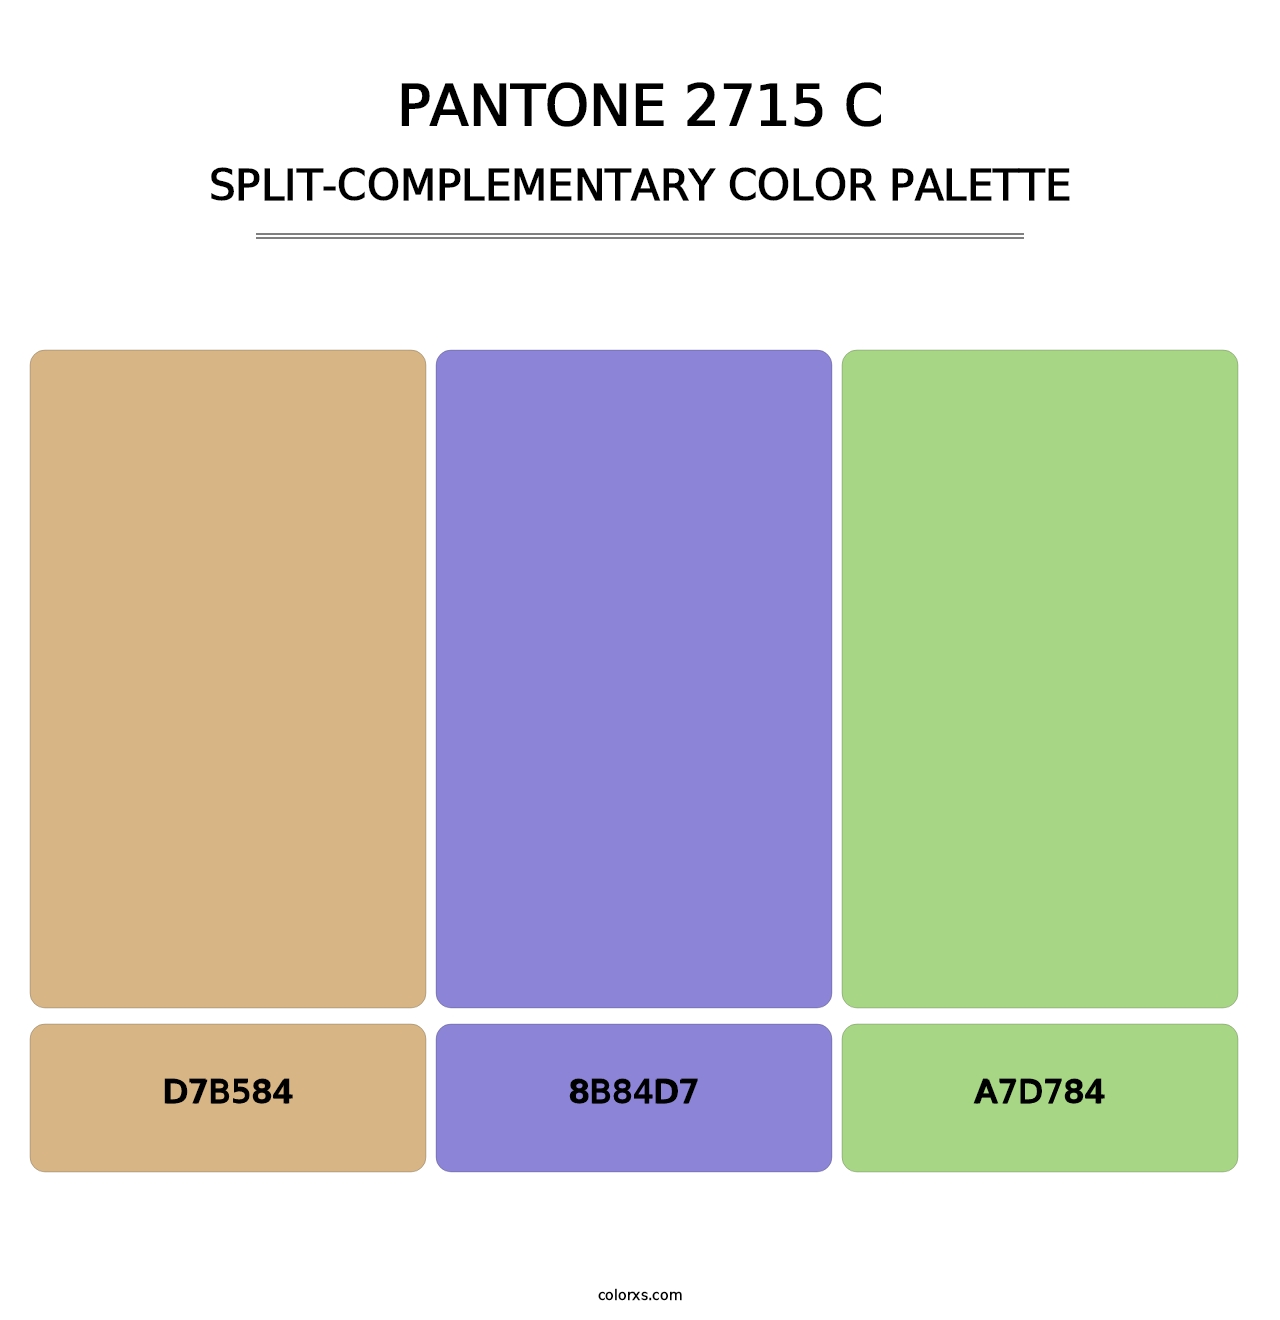 PANTONE 2715 C - Split-Complementary Color Palette